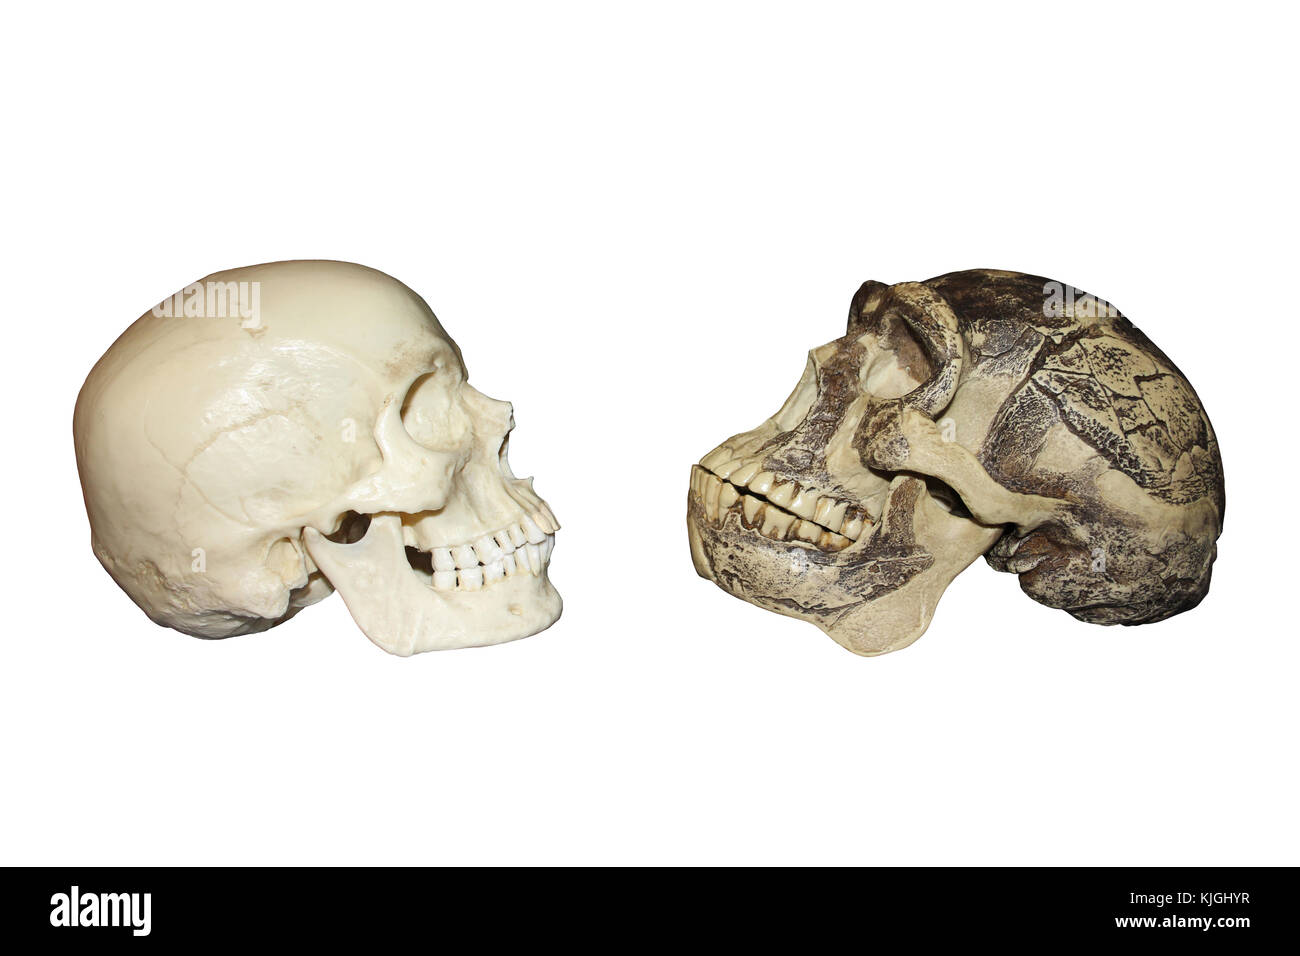 L'homme moderne vs Zhoukoudian (Choukoutien) Homo erectus crâne Banque D'Images